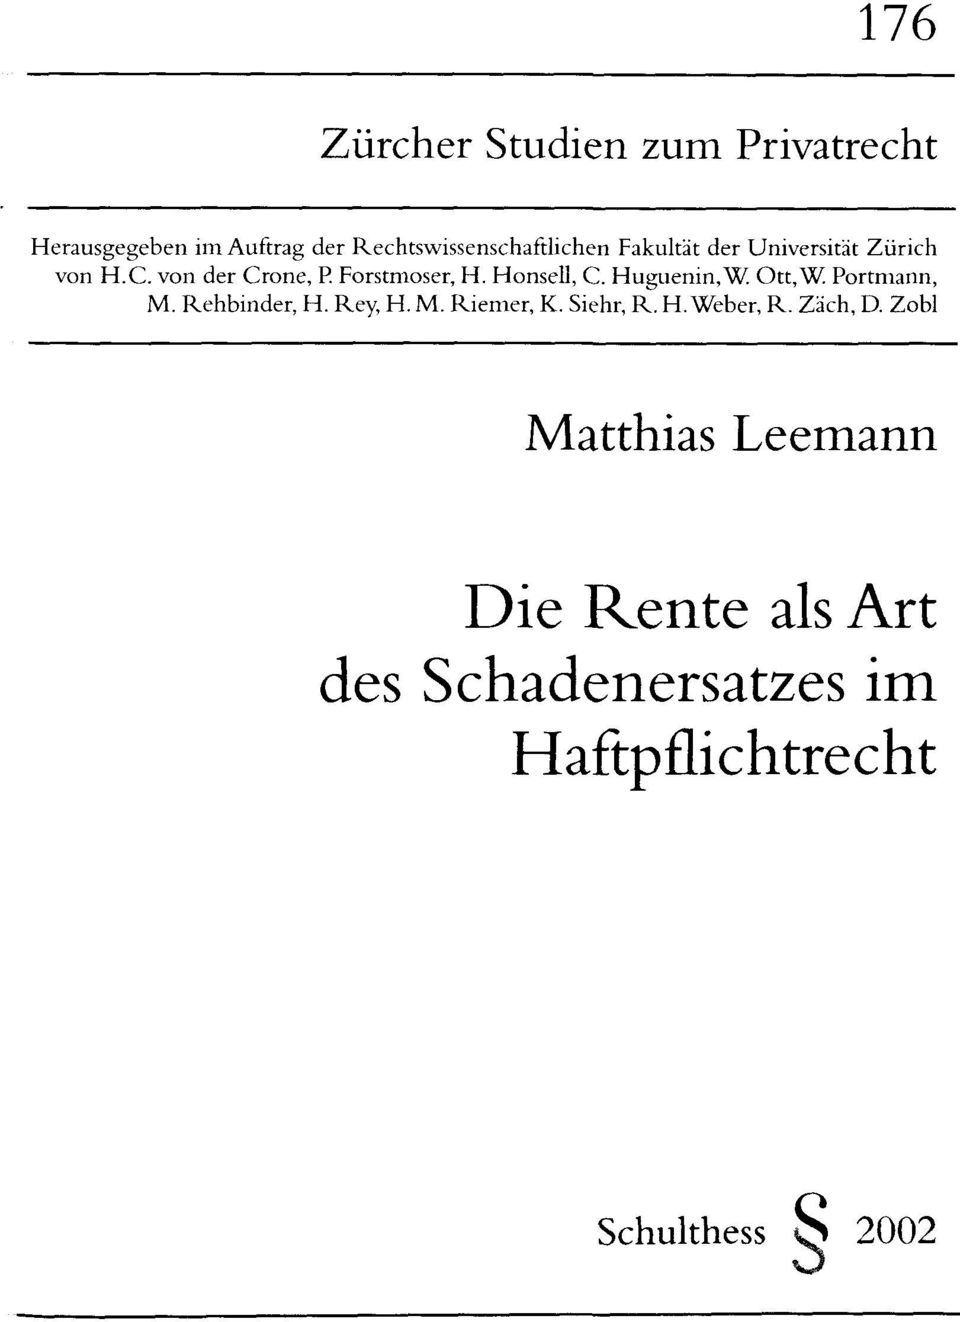 Huguenin,W. Ott,W Portmann, M. Rehbinder, H. Rey, H. M. Riemer, K. Siehr, R. H.Weber, R.